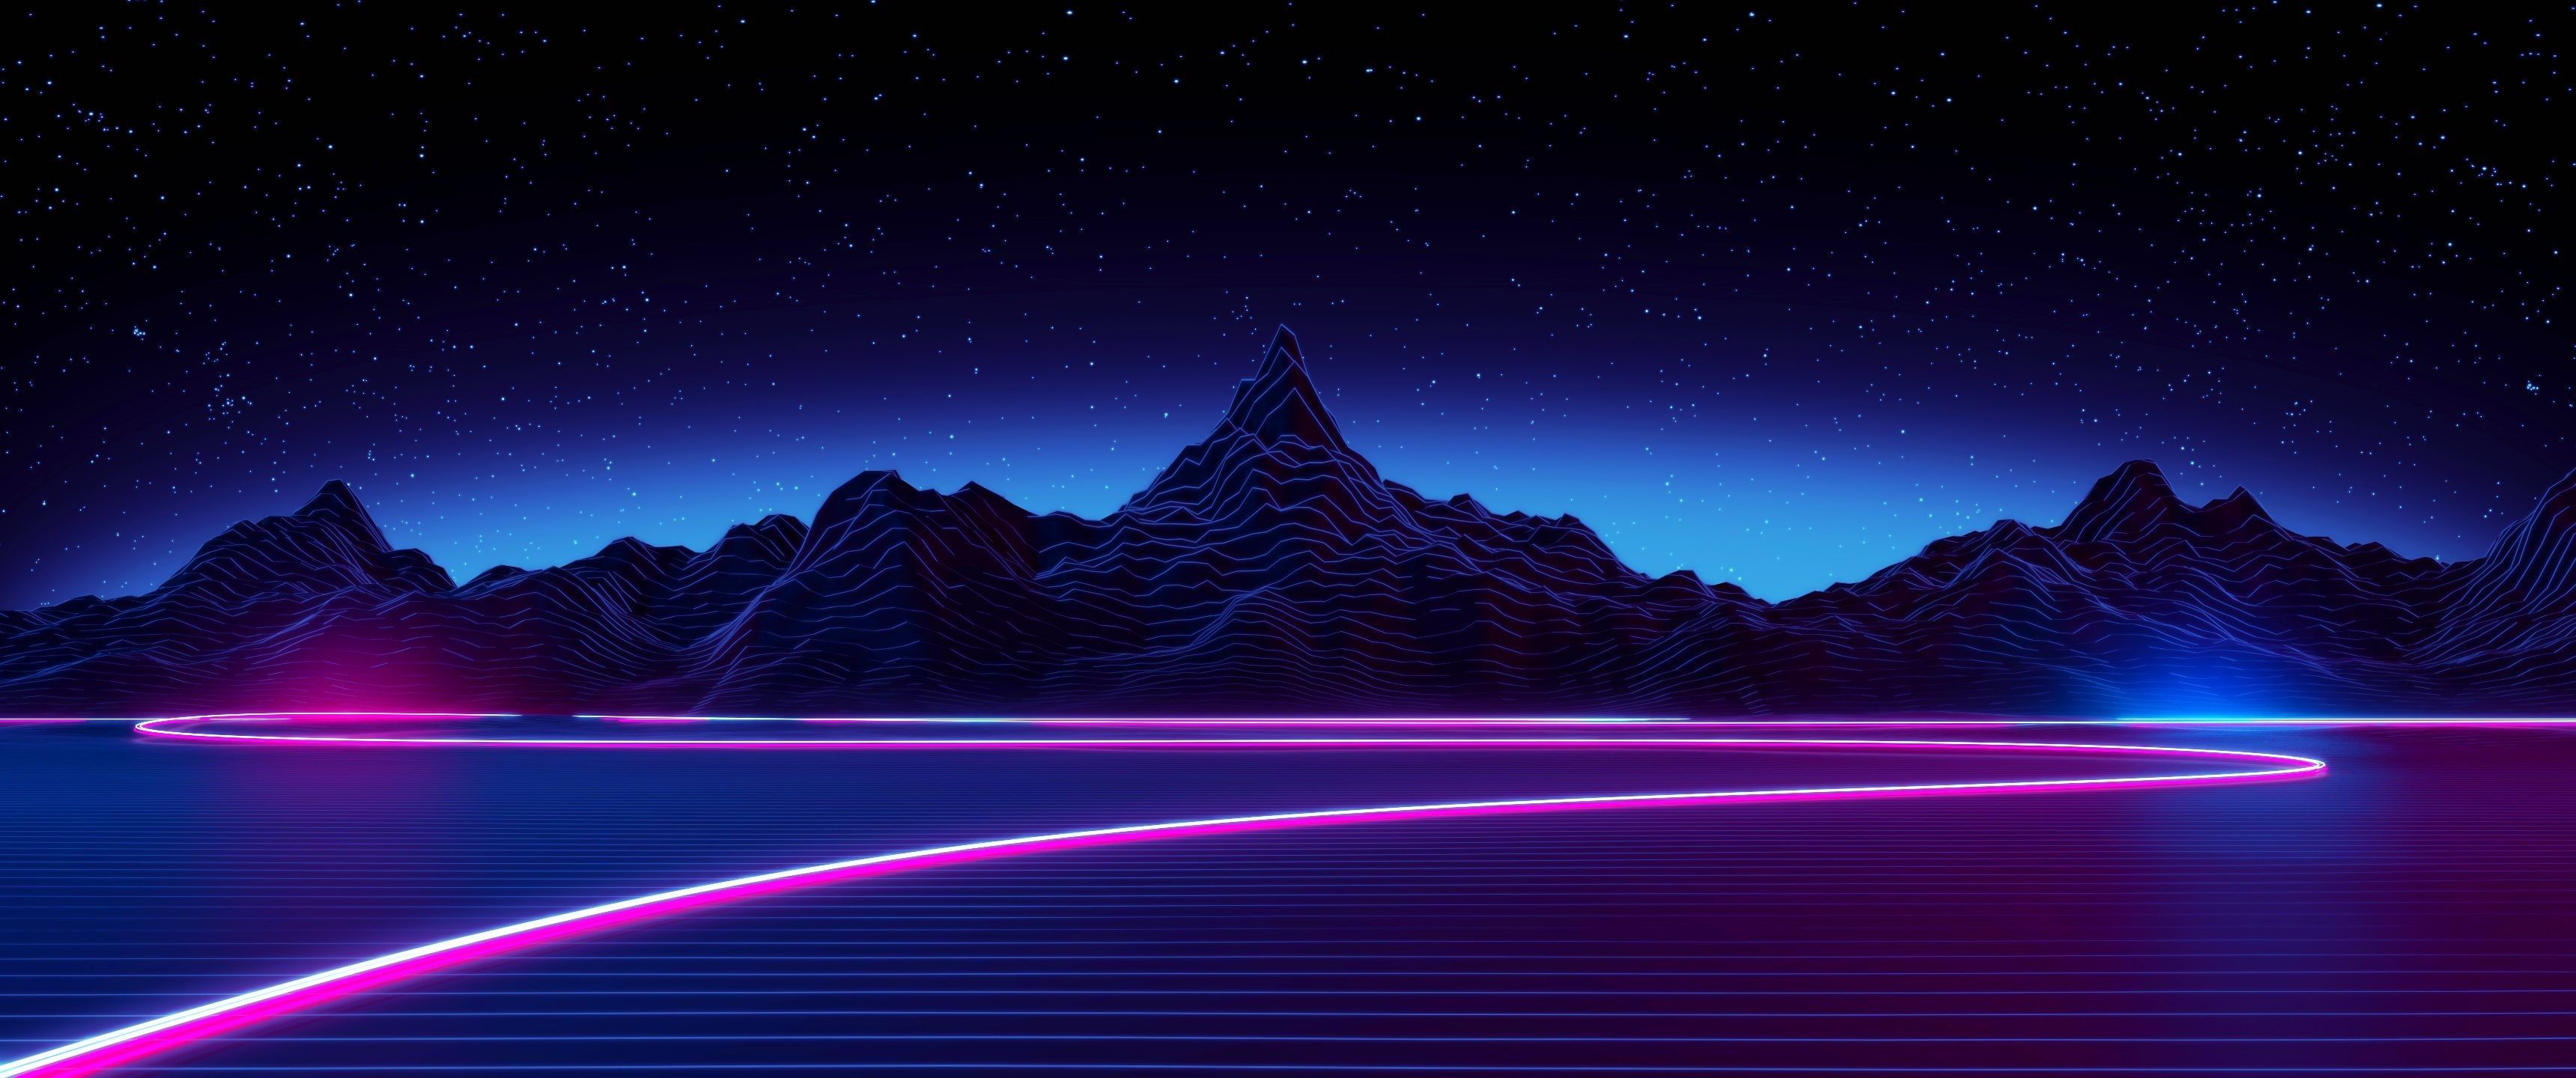 neon desktop backgrounds